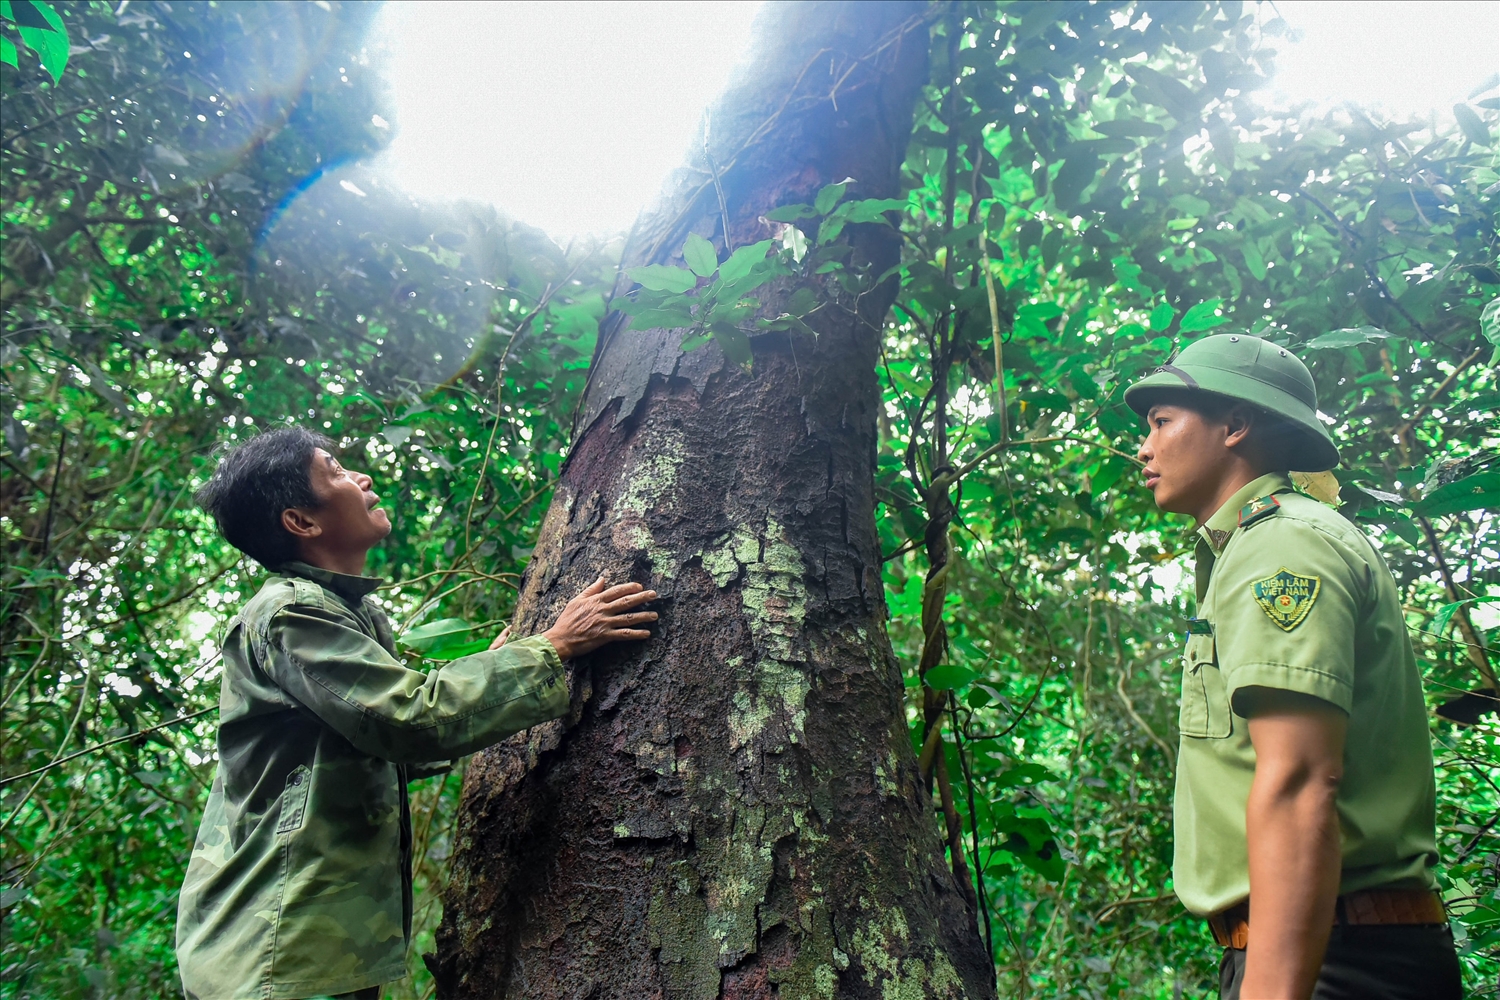 Nhiều cây thân lớn 2-3 người ôm không xuể, được coi là rừng lim cổ thụ lớn nhất Thanh Hóa